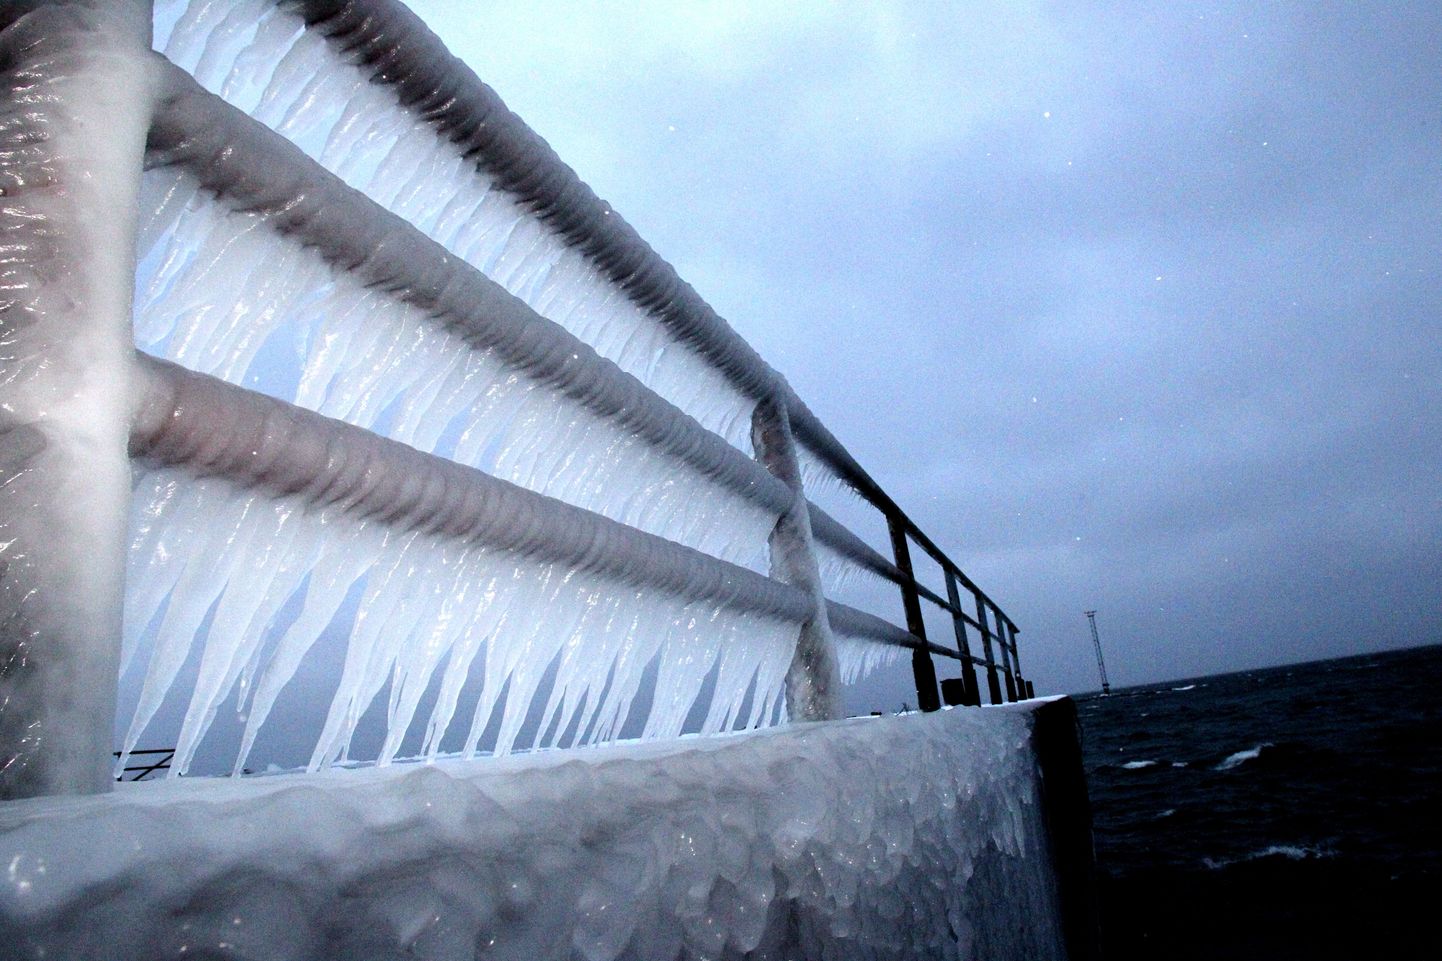 Tuulest ja külmast tekkinud jääpurikad. Foto on illustreeriv.